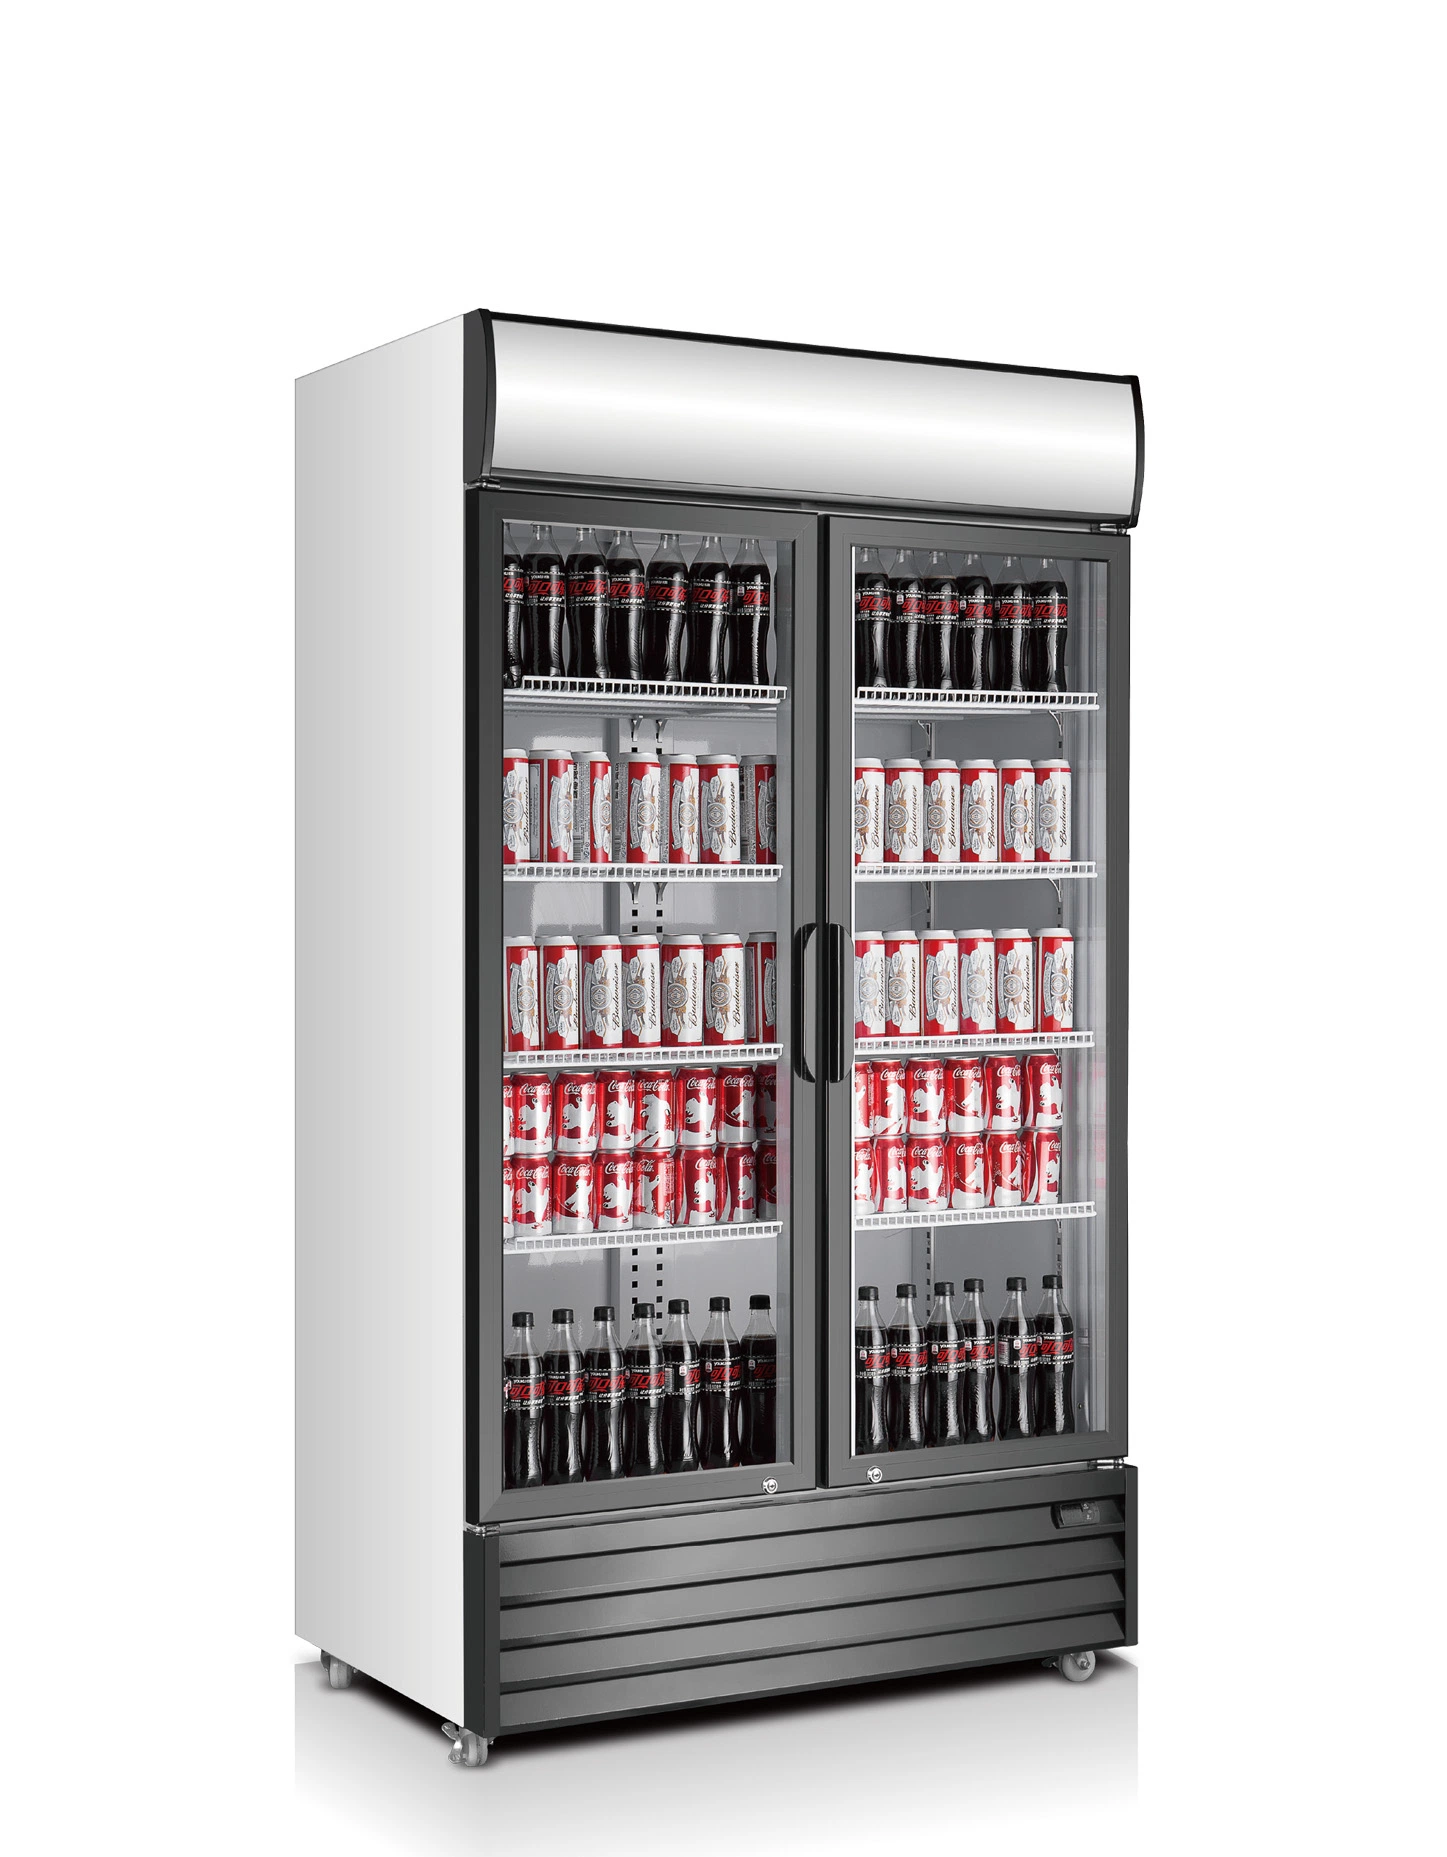 Coke Marca Duas Portas Expositor de Garrafas Refrigerado com Sistema de Refrigeração Dinâmica